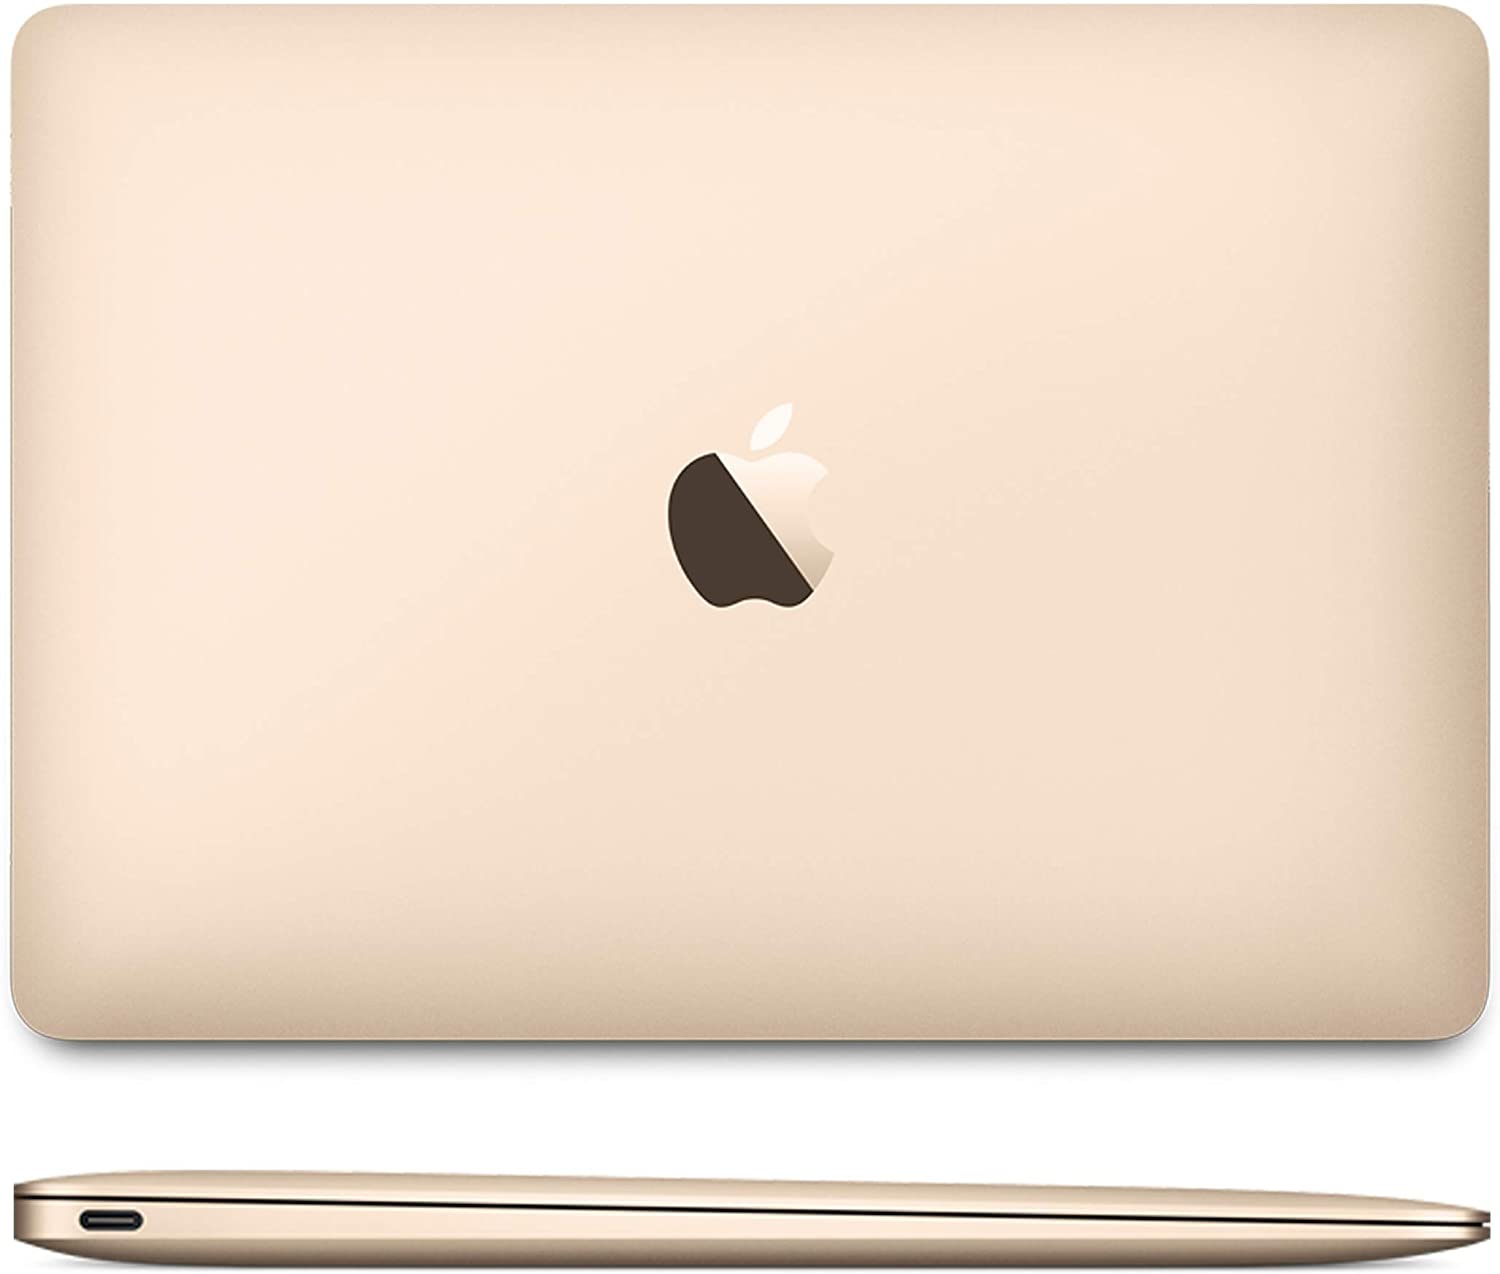 Macbook 12 Apple 2017